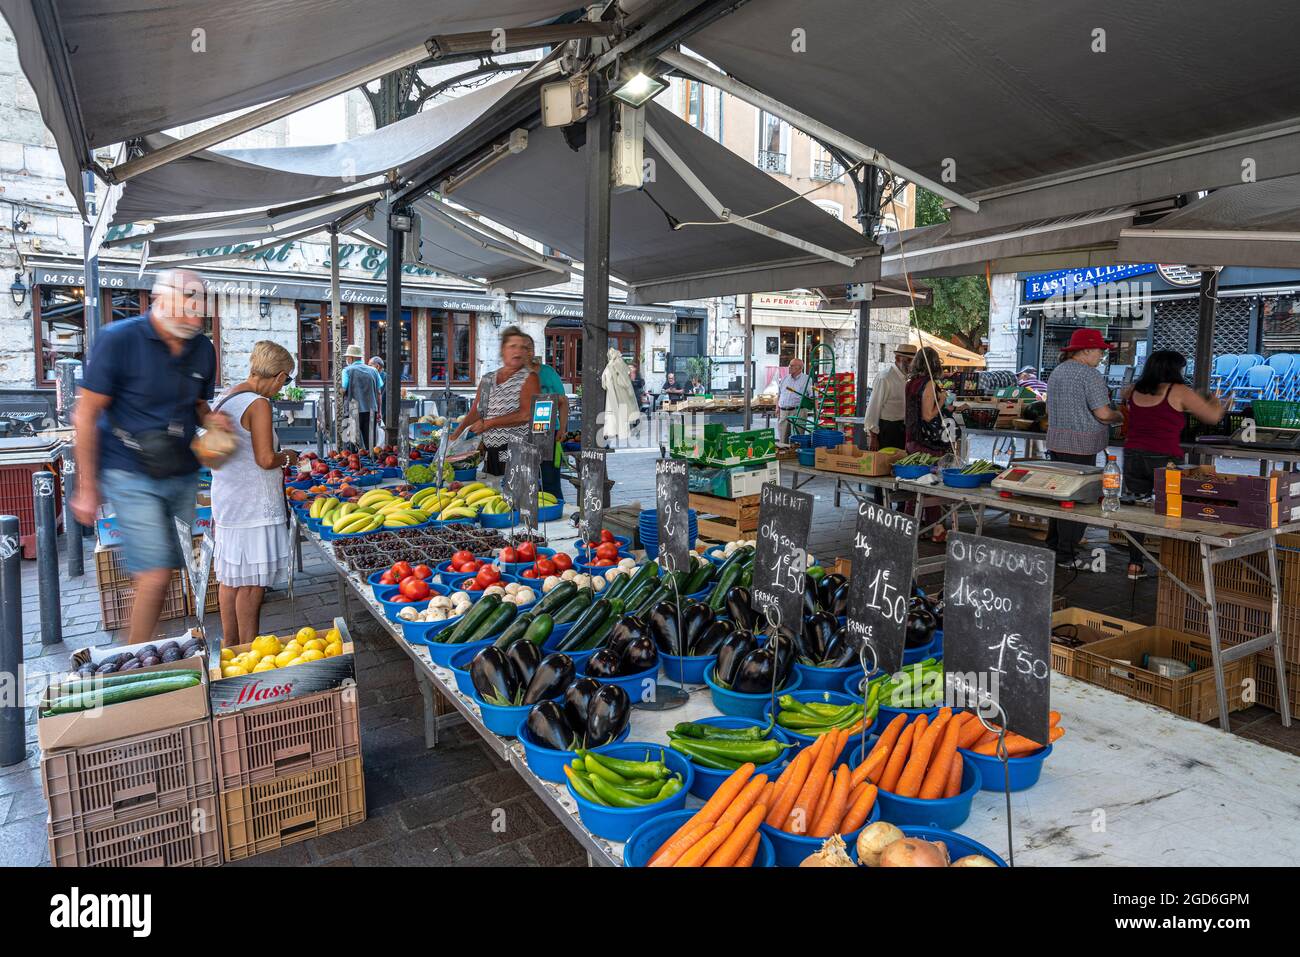 Lokale Obst- und Gemüselände zum Verkauf in Place aux herbes, Markt im Herzen der Stadt Grenoble. Grenoble, Frankreich Stockfoto